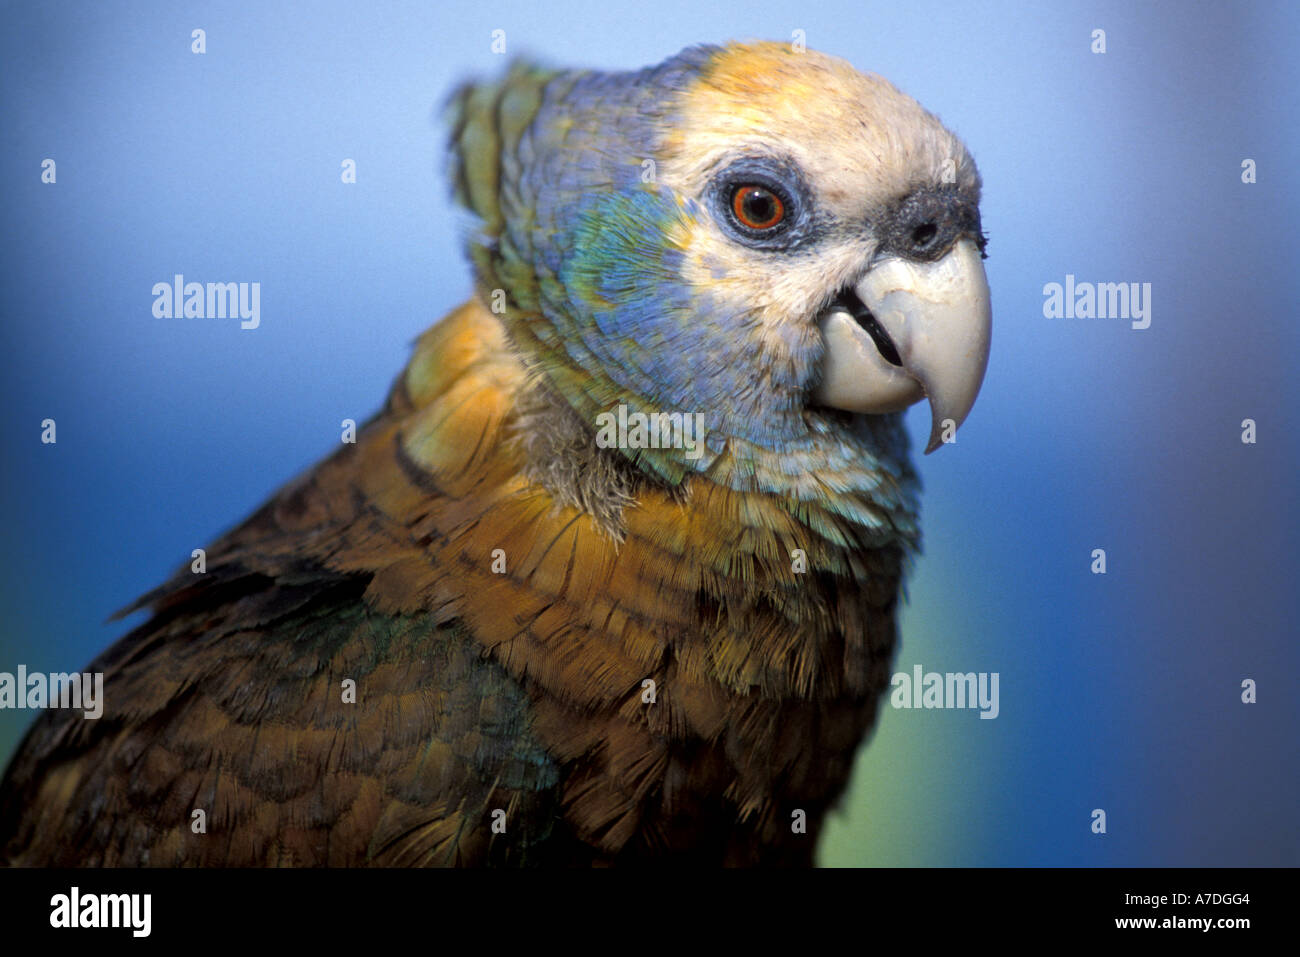 Caribbean birds st vincent parrot Stock Photo